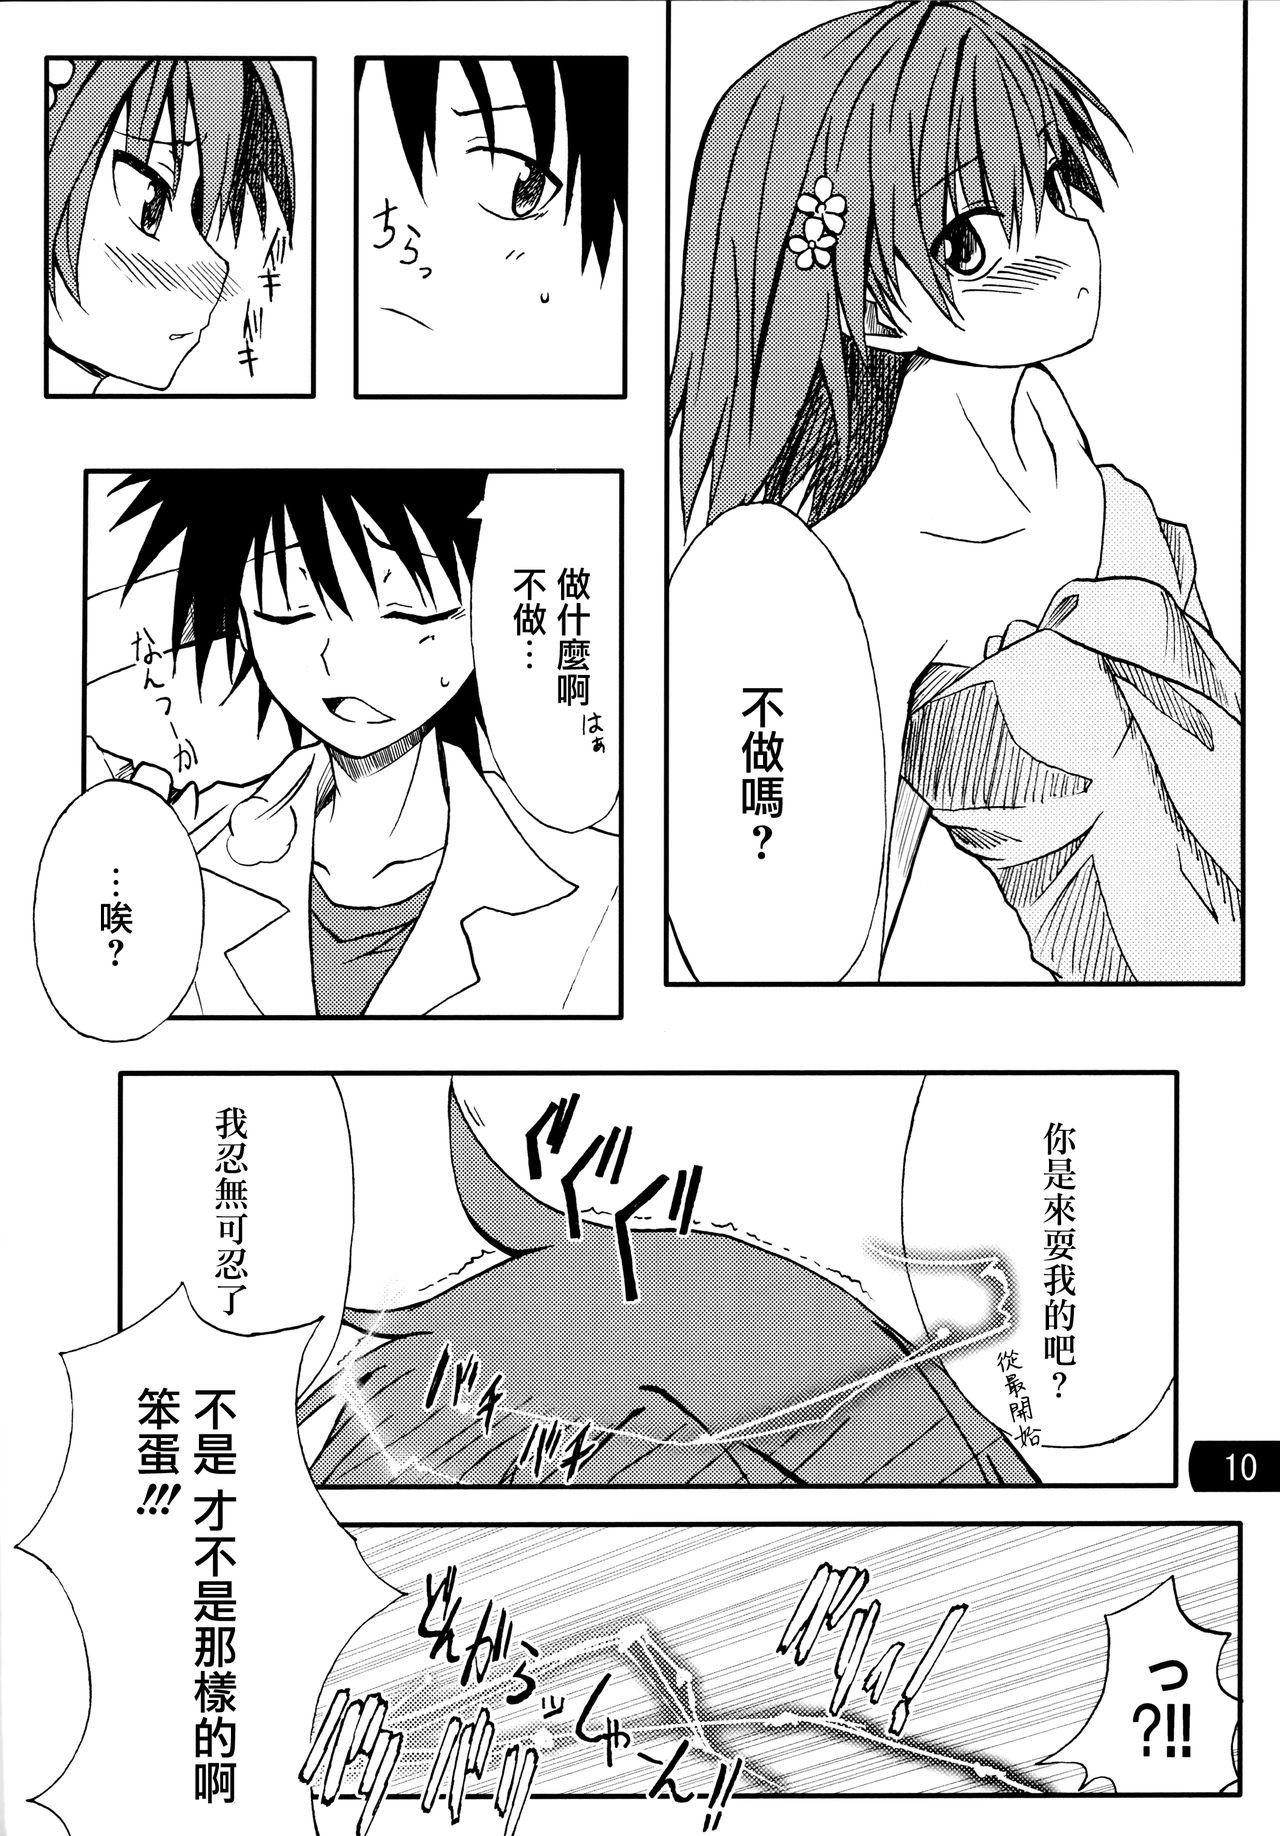 Nice Tits Toaru mousou no chou denji hon 02 - Toaru kagaku no railgun Chudai - Page 9